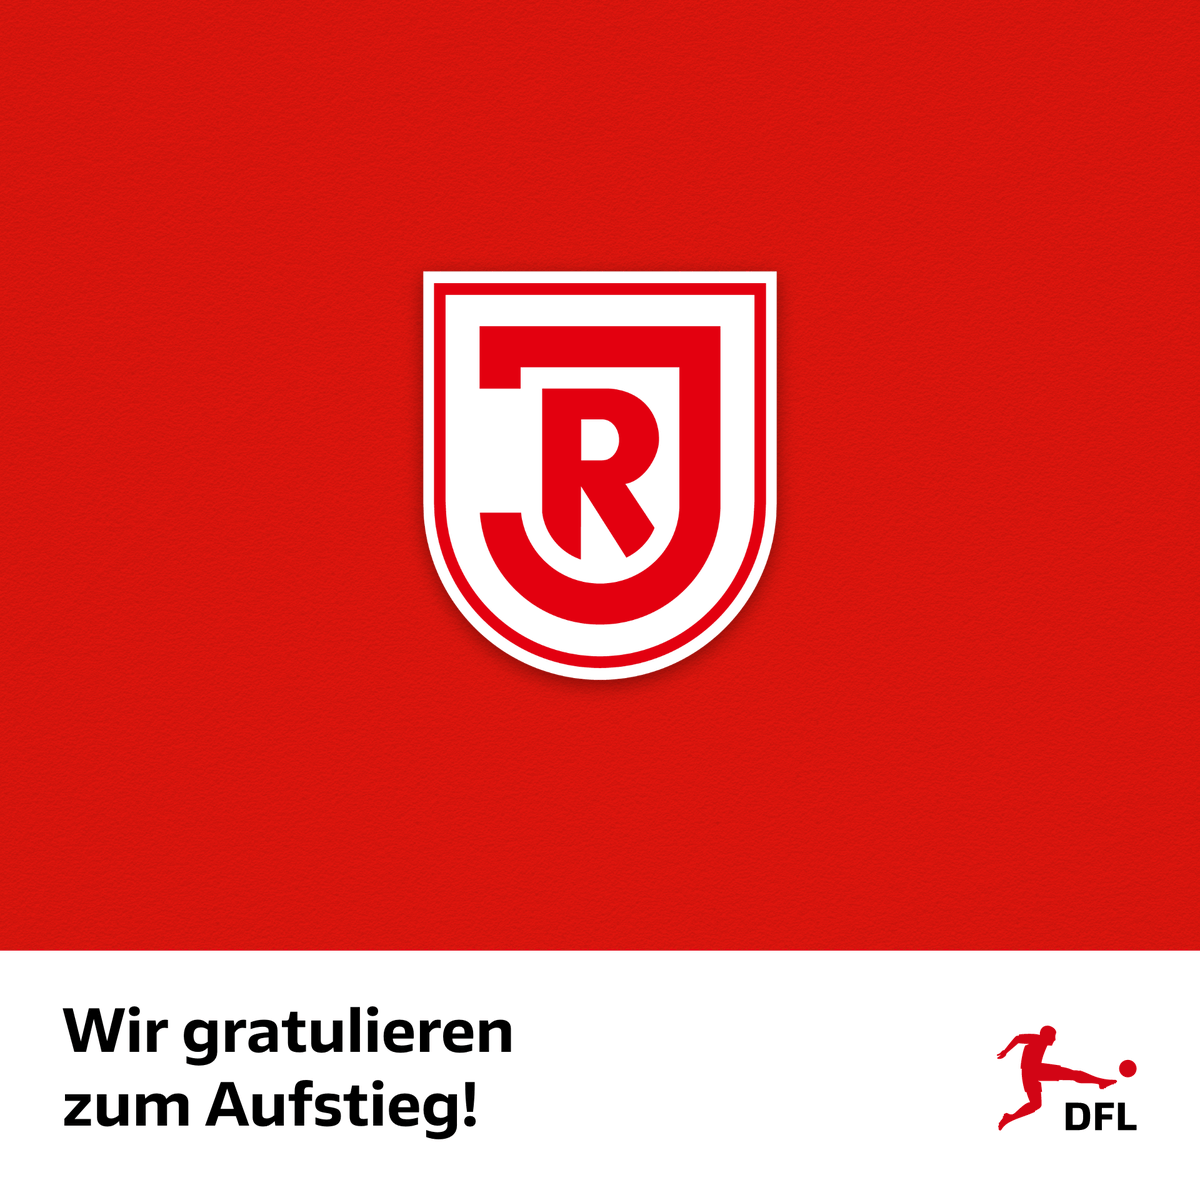 Herzlichen Glückwunsch zum Aufstieg in die 2. Bundesliga, @SSVJAHN! Die #DFL gratuliert dem SSV Jahn #Regensburg zur Rückkehr in die zweithöchste deutsche Spielklasse ➡️ dfl.de/de/aktuelles/g…